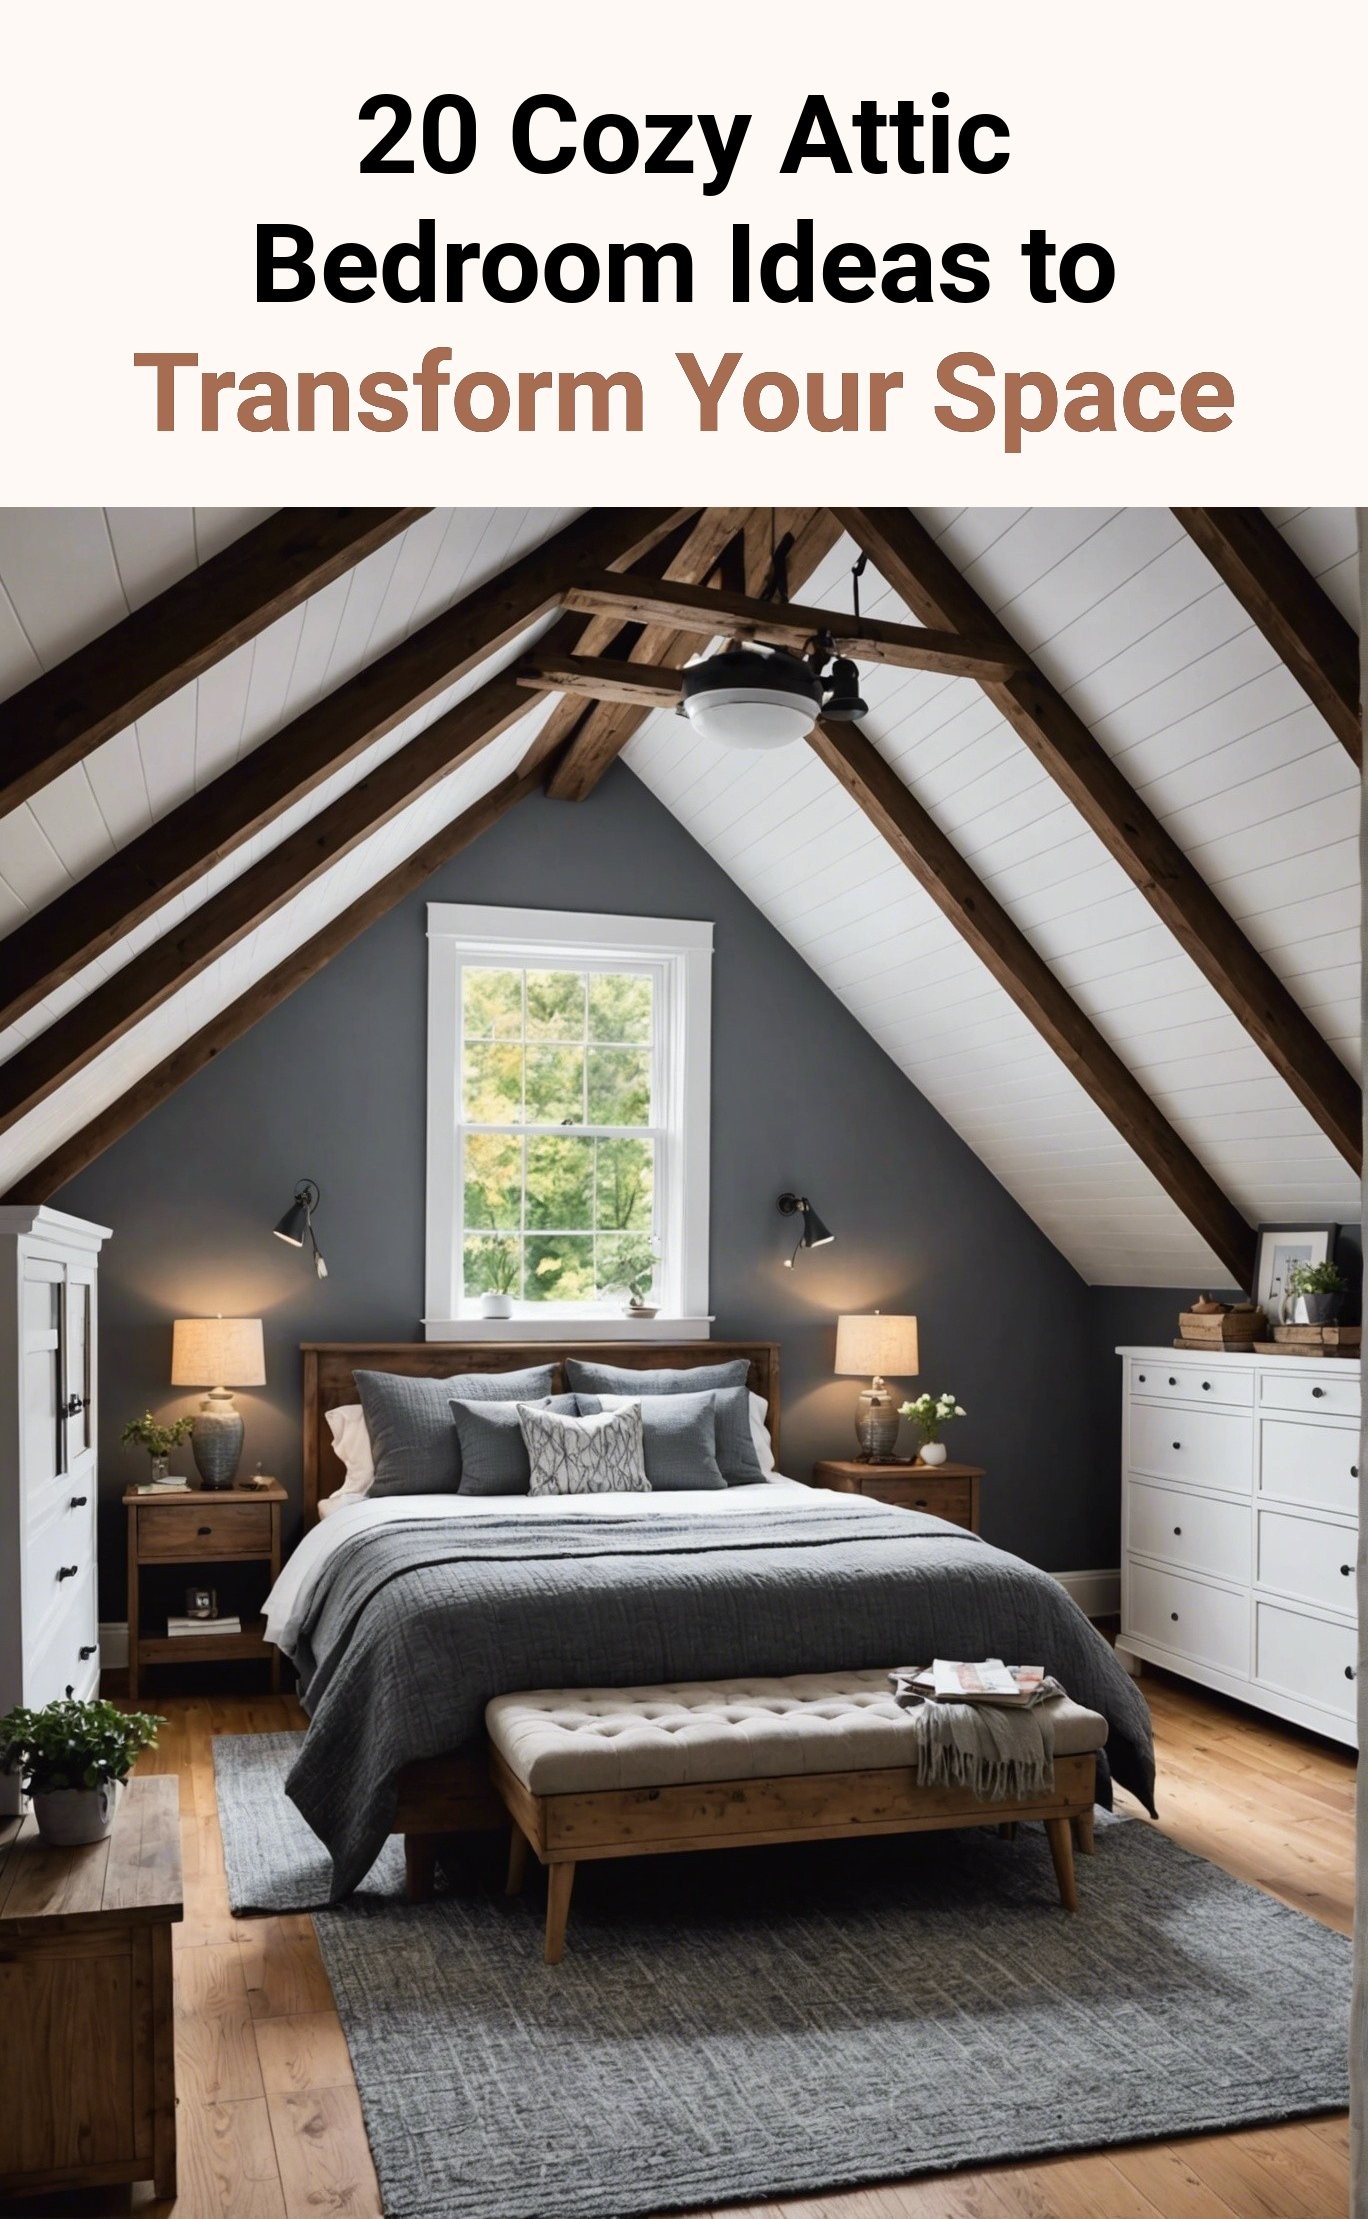 20 Cozy Attic Bedroom Ideas to Transform Your Space